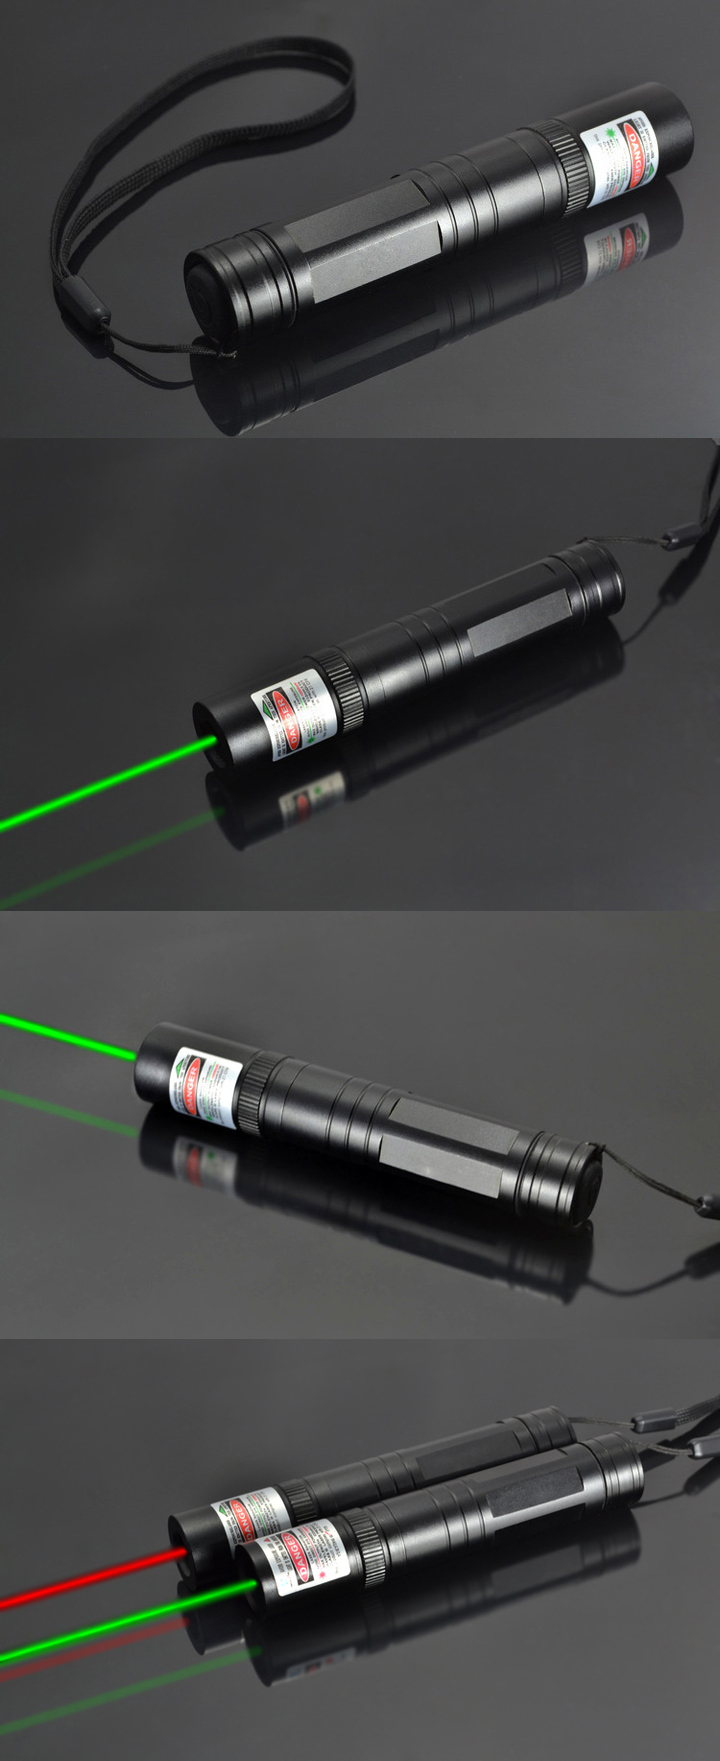 laserpen voor astronomie